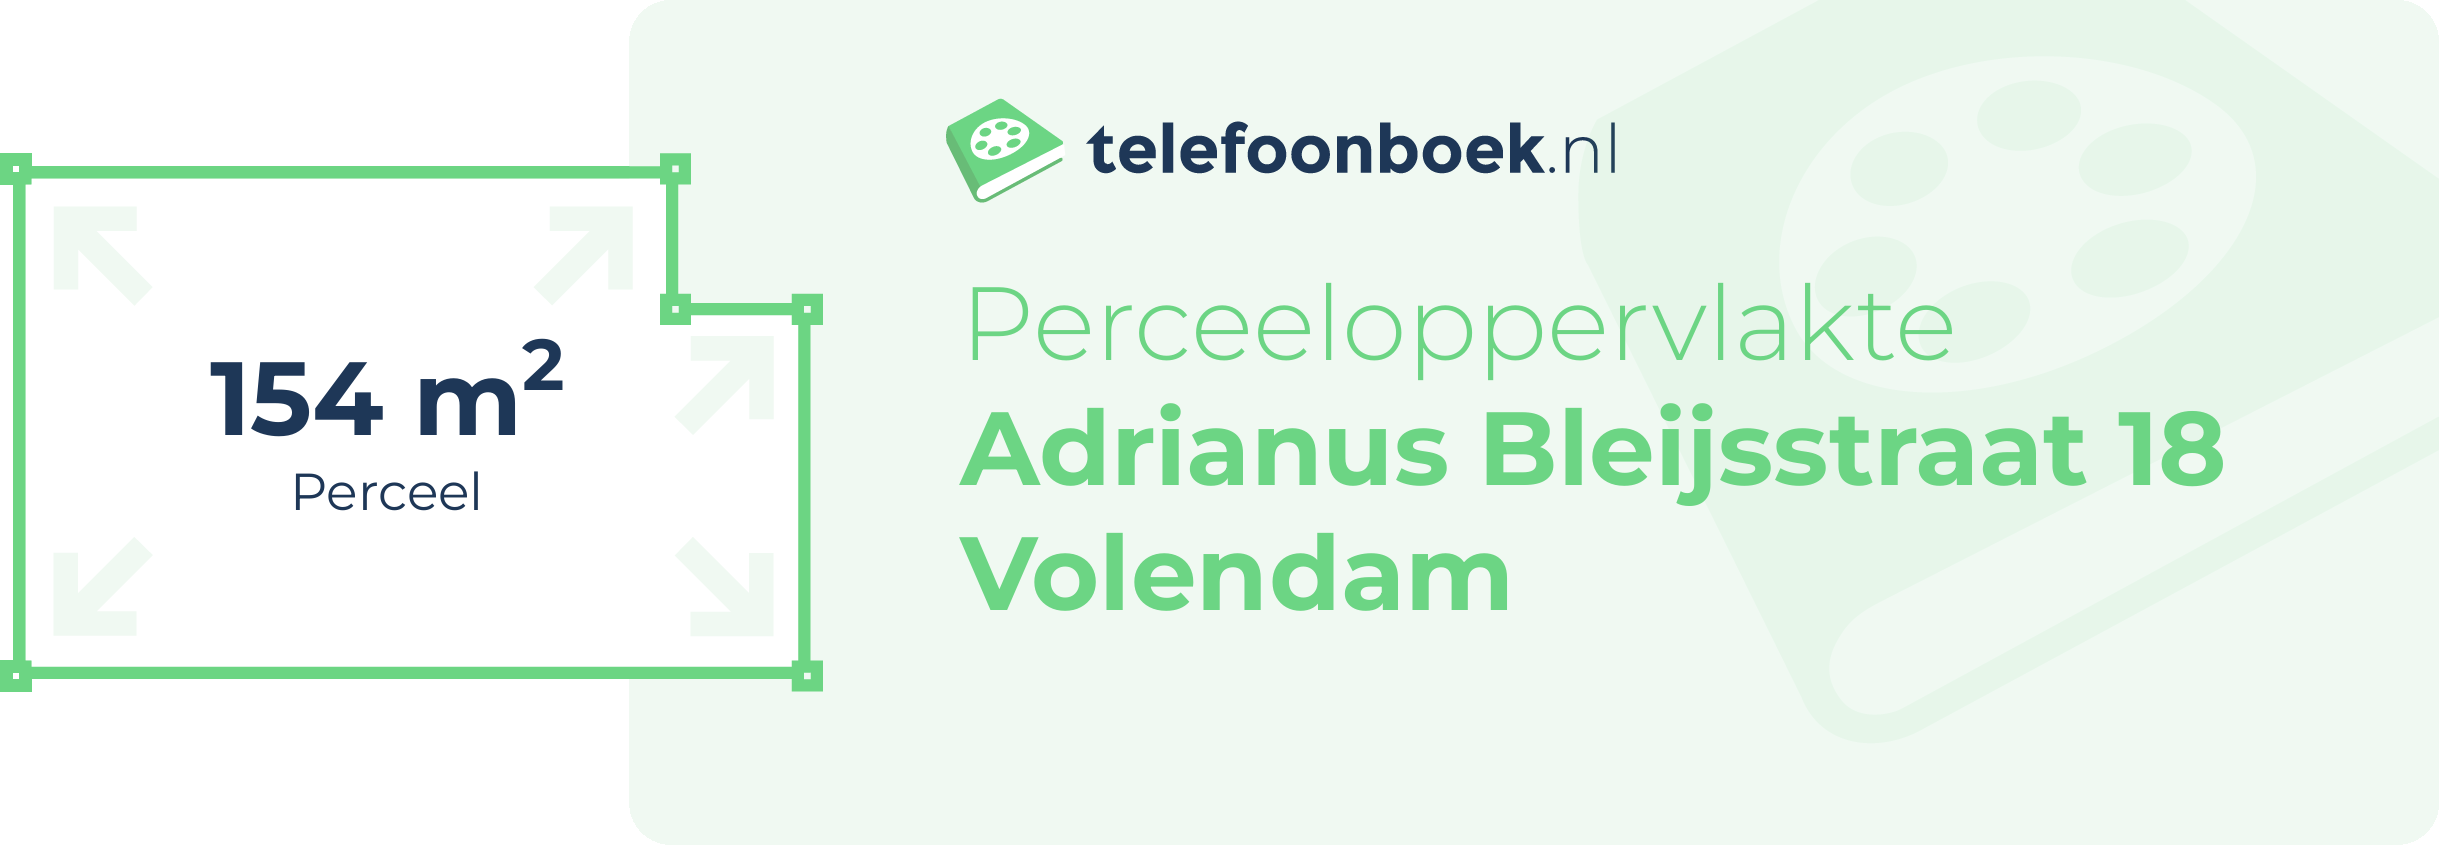 Perceeloppervlakte Adrianus Bleijsstraat 18 Volendam